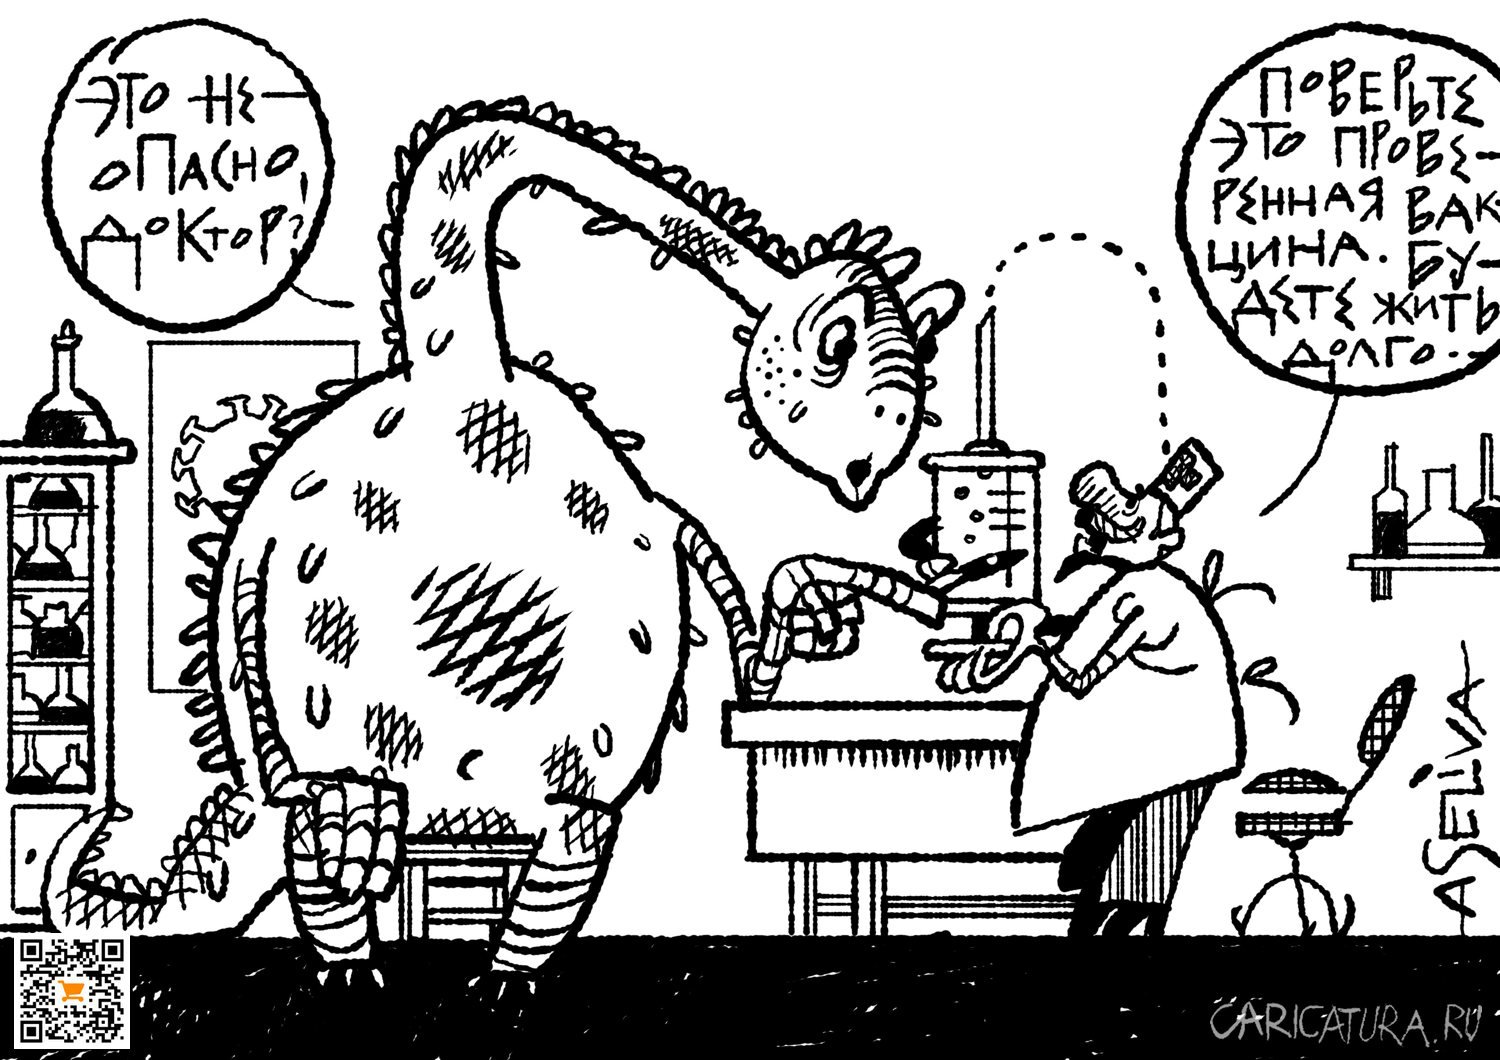 Карикатура "Почему вымерли динозавры", Андрей Селиванов